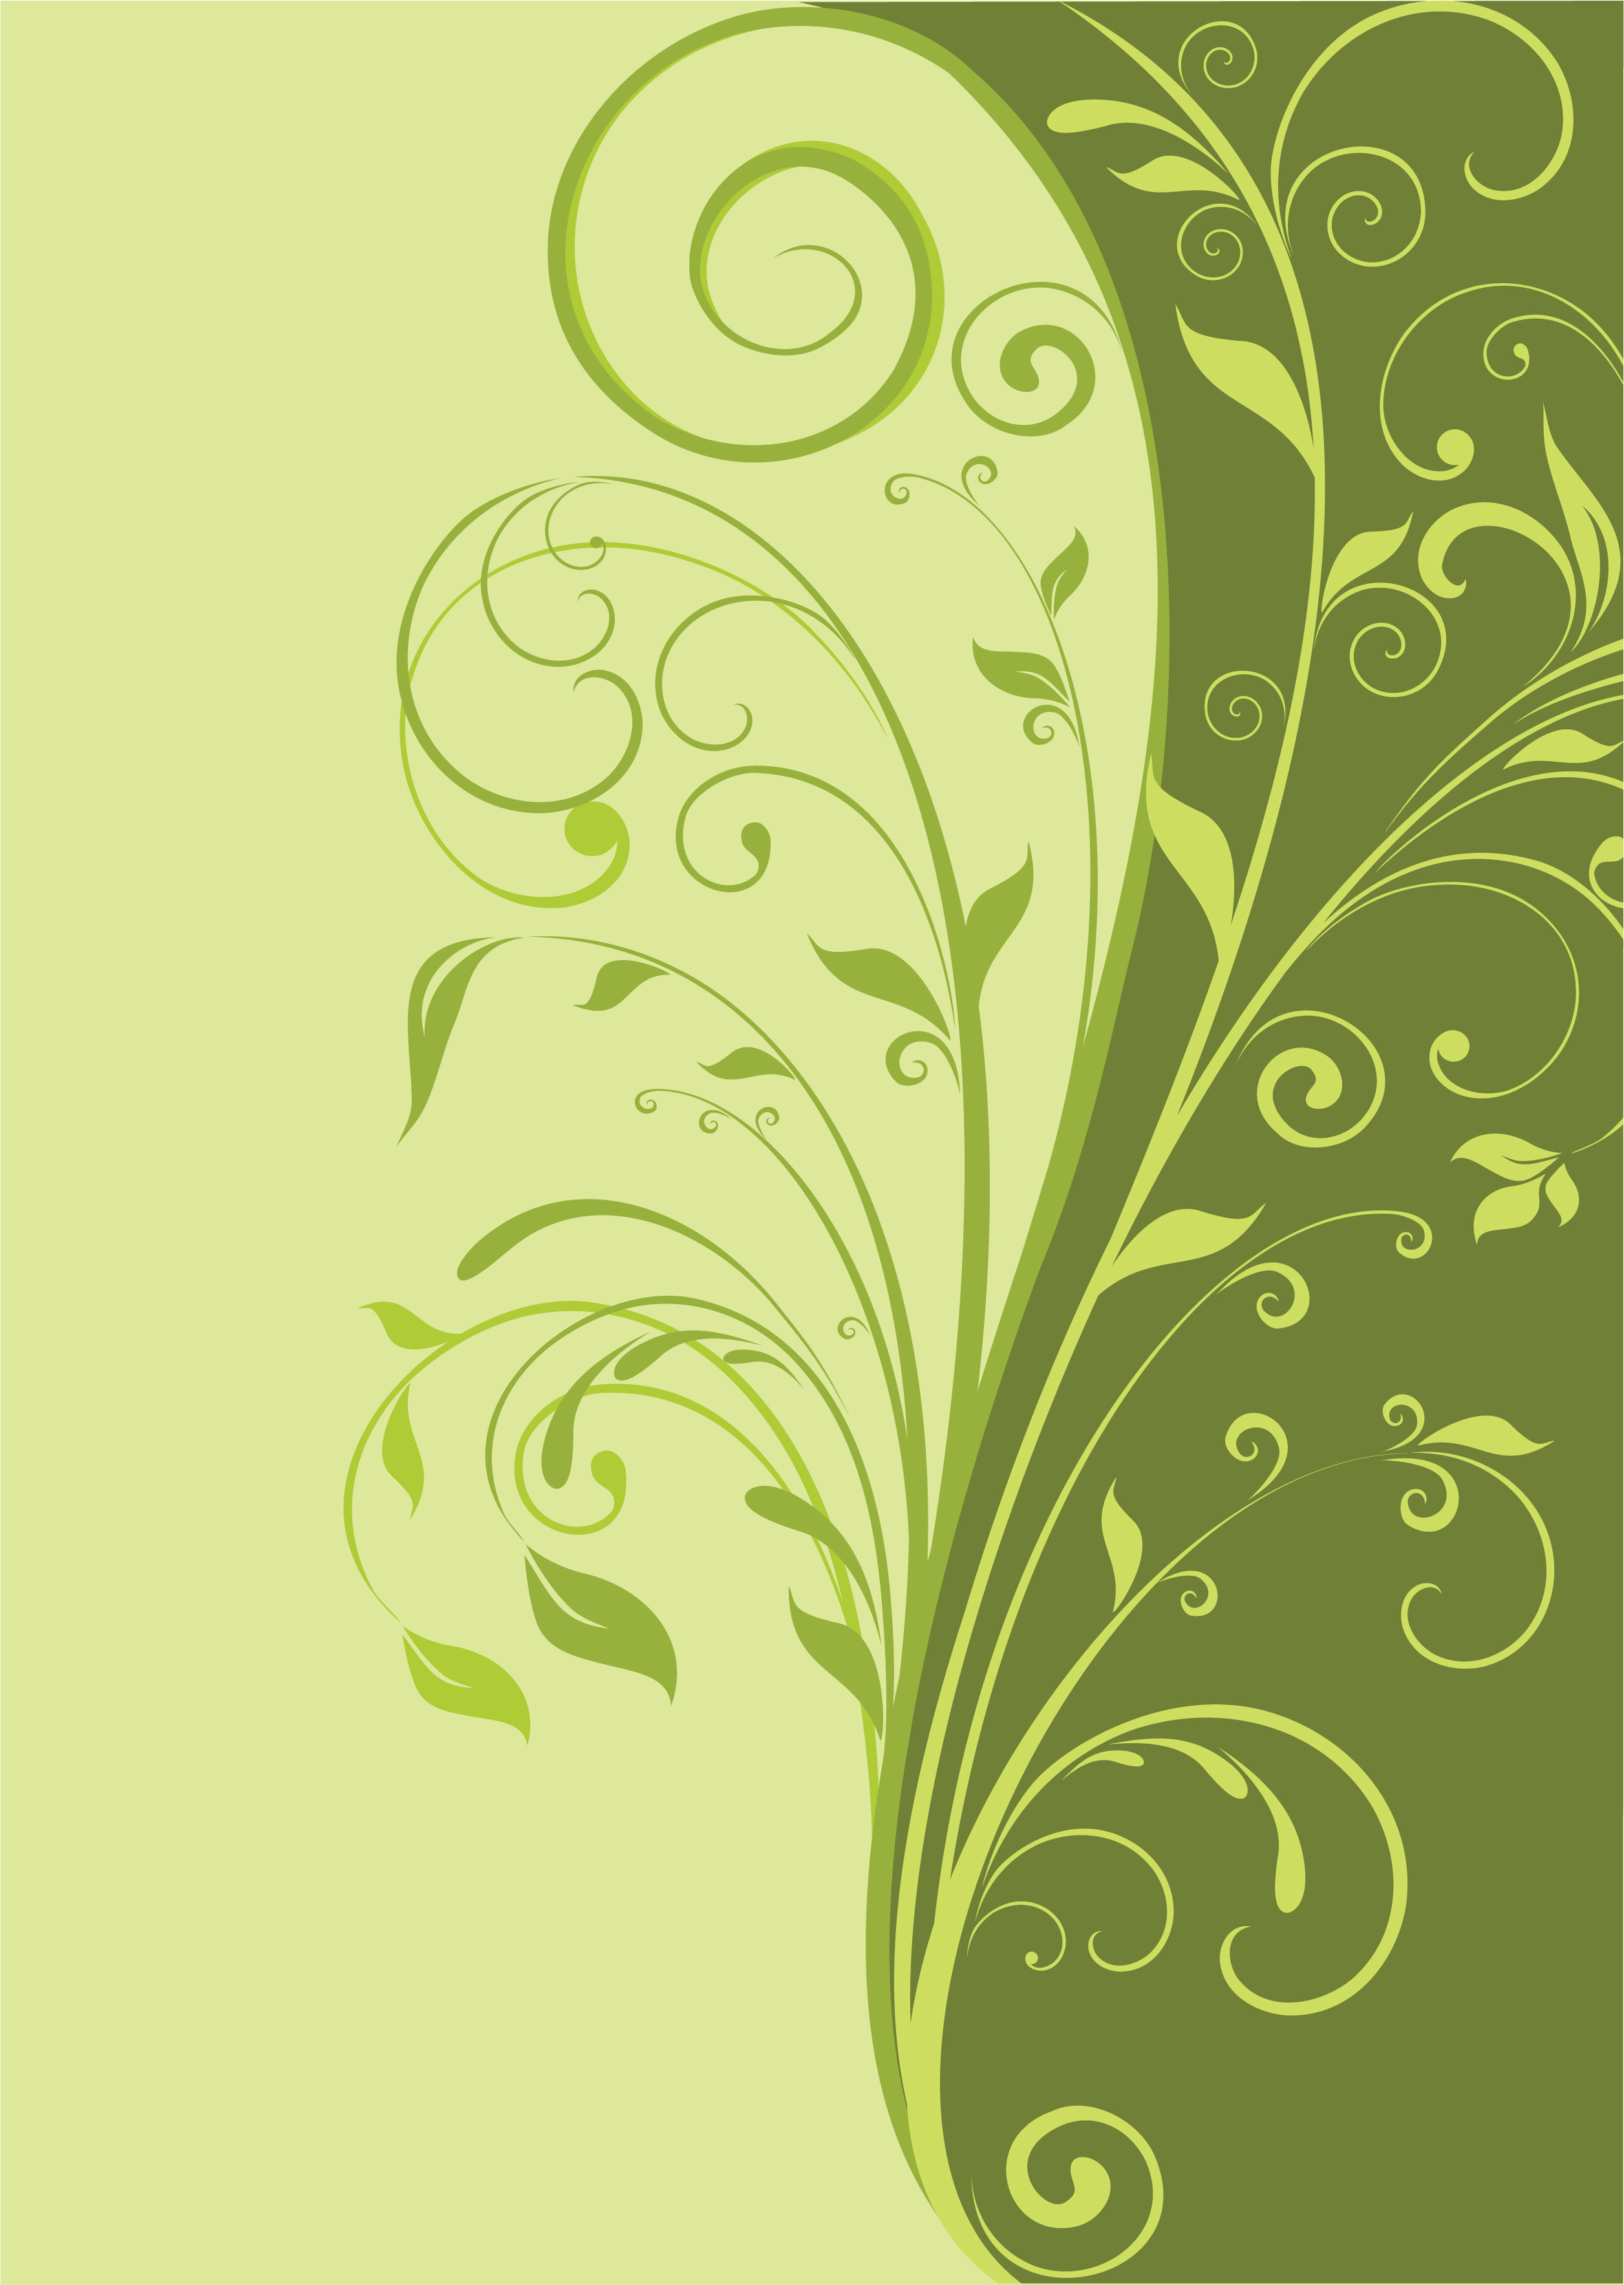 葉っぱや草木のイラスト 壁紙 背景no 021 緑二色 茎蔓 巻き